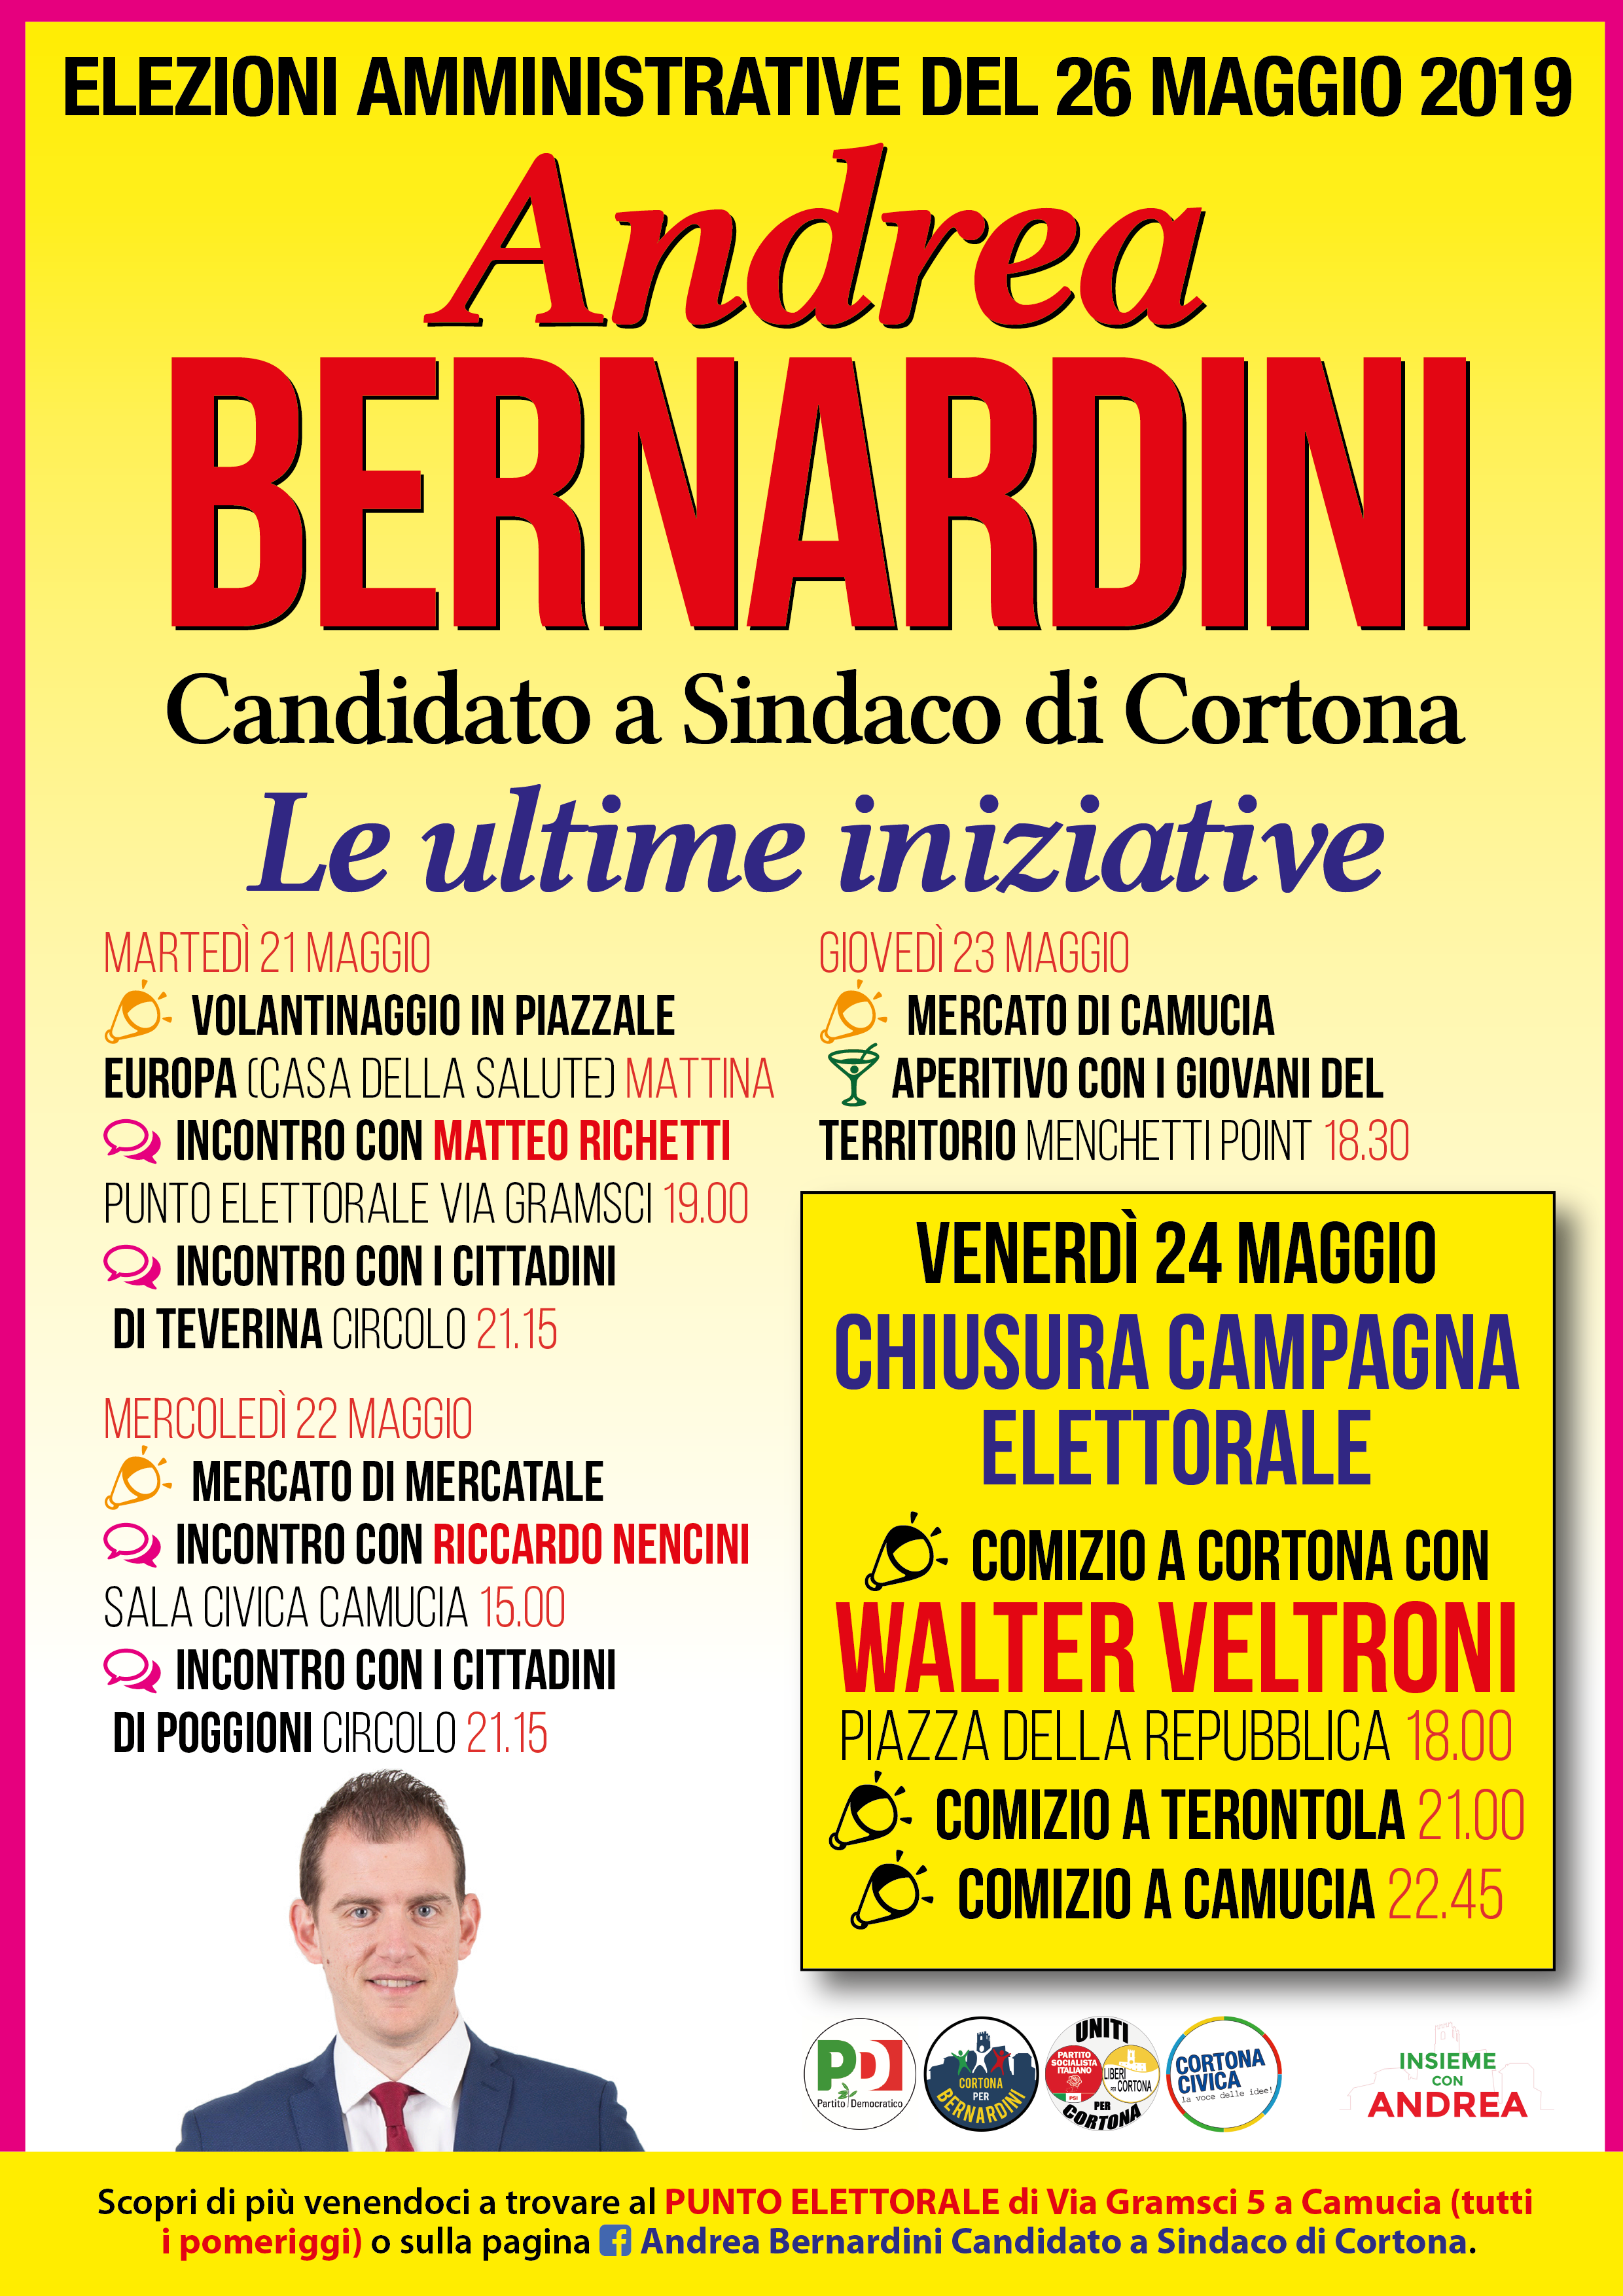 Sarà Walter Veltroni a chiudere la campagna elettorale di Andrea Bernardini